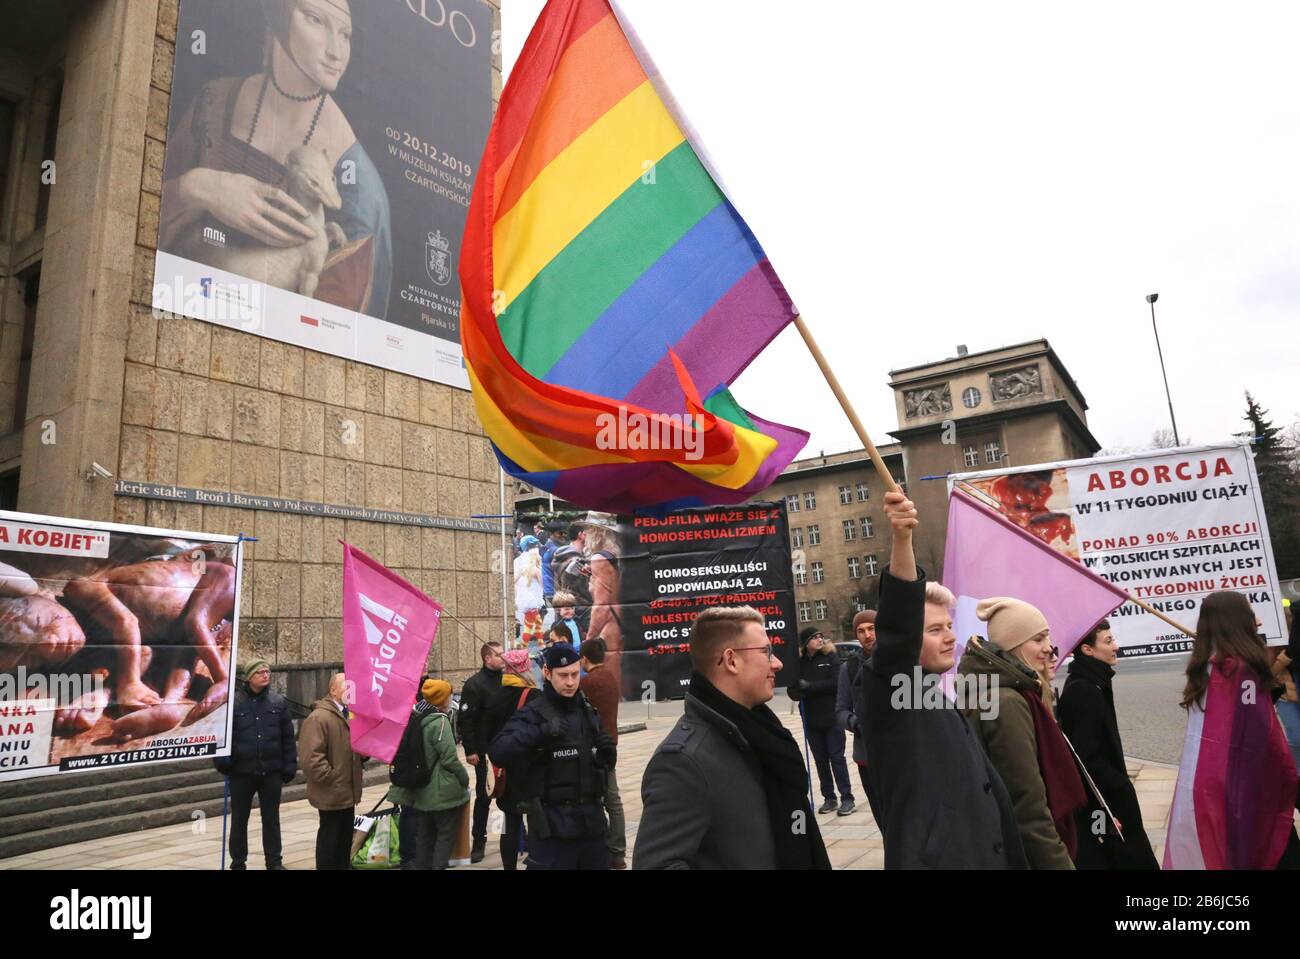 Cracovia. Cracovia. Polonia. Colector. Las mujeres se manifiestan por la igualdad de derechos en el día Internacional de la Mujer. Banners gráficos anti-elección en el fondo. Foto de stock